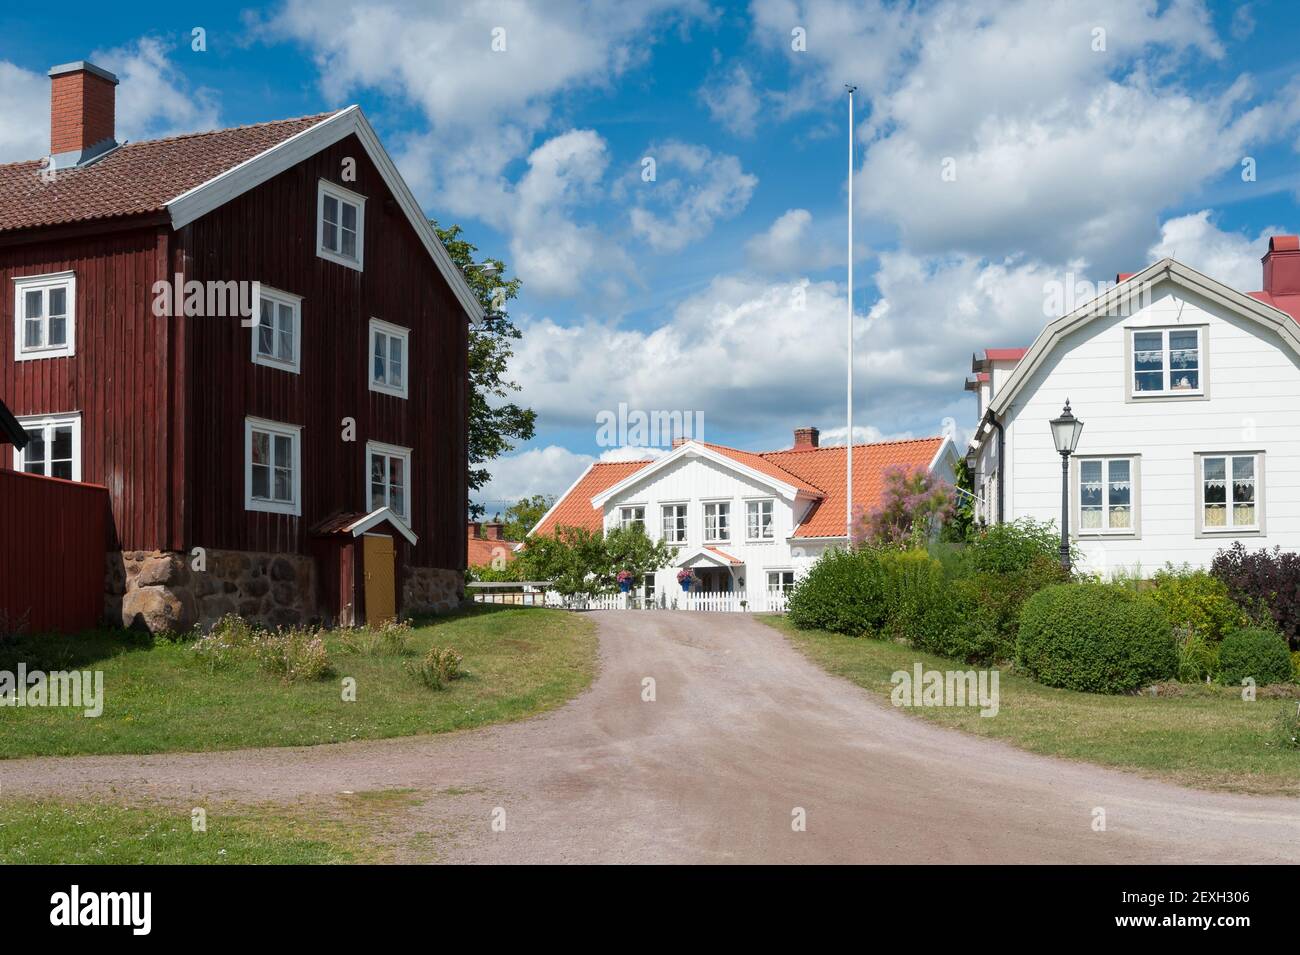 Típicas casas de madera roja en el pequeño coa sueco Foto de stock